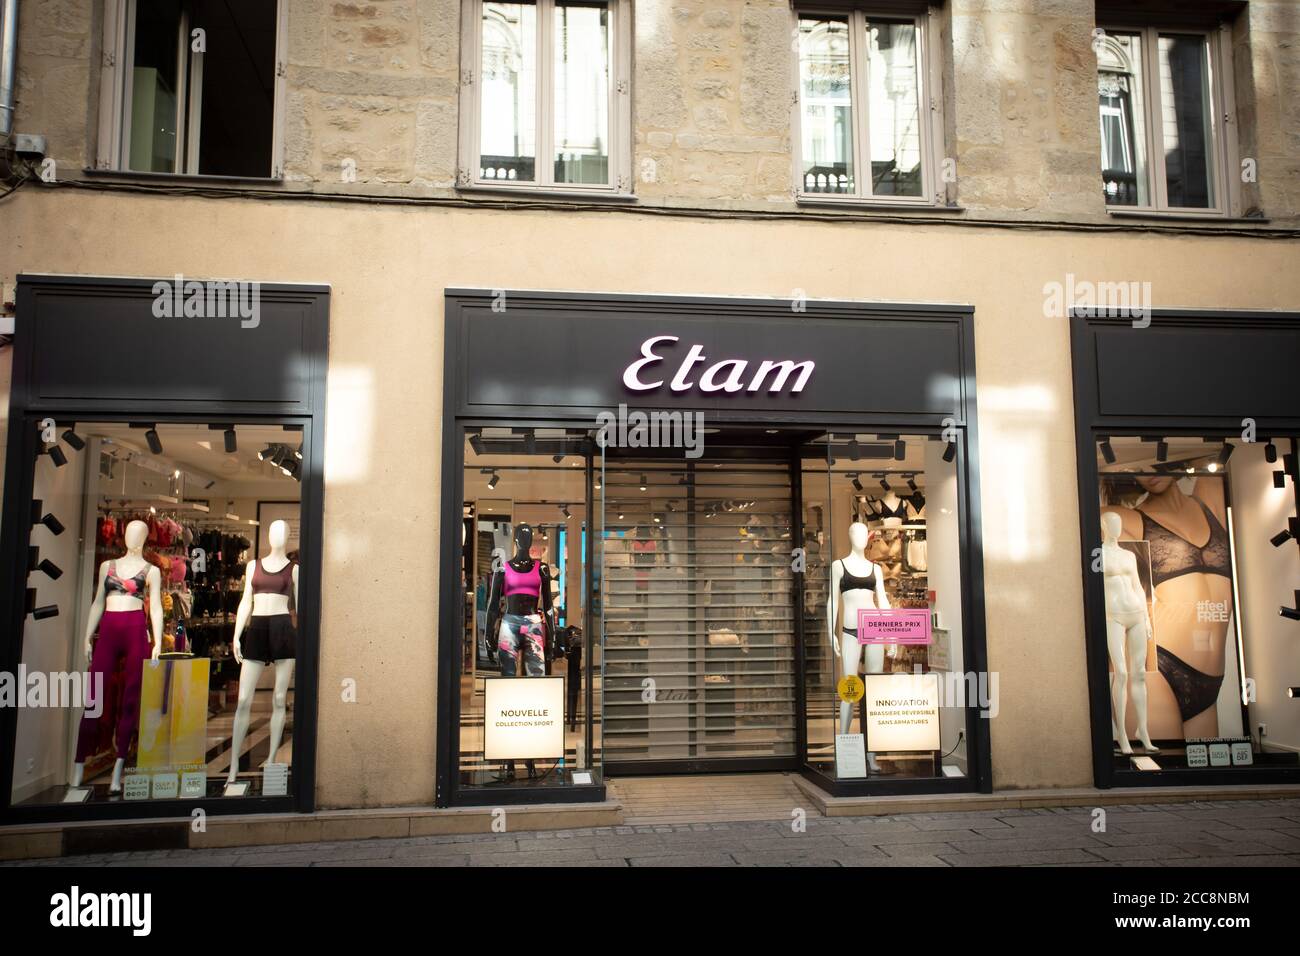 Negozio di abbigliamento donna Etam brand Foto stock - Alamy